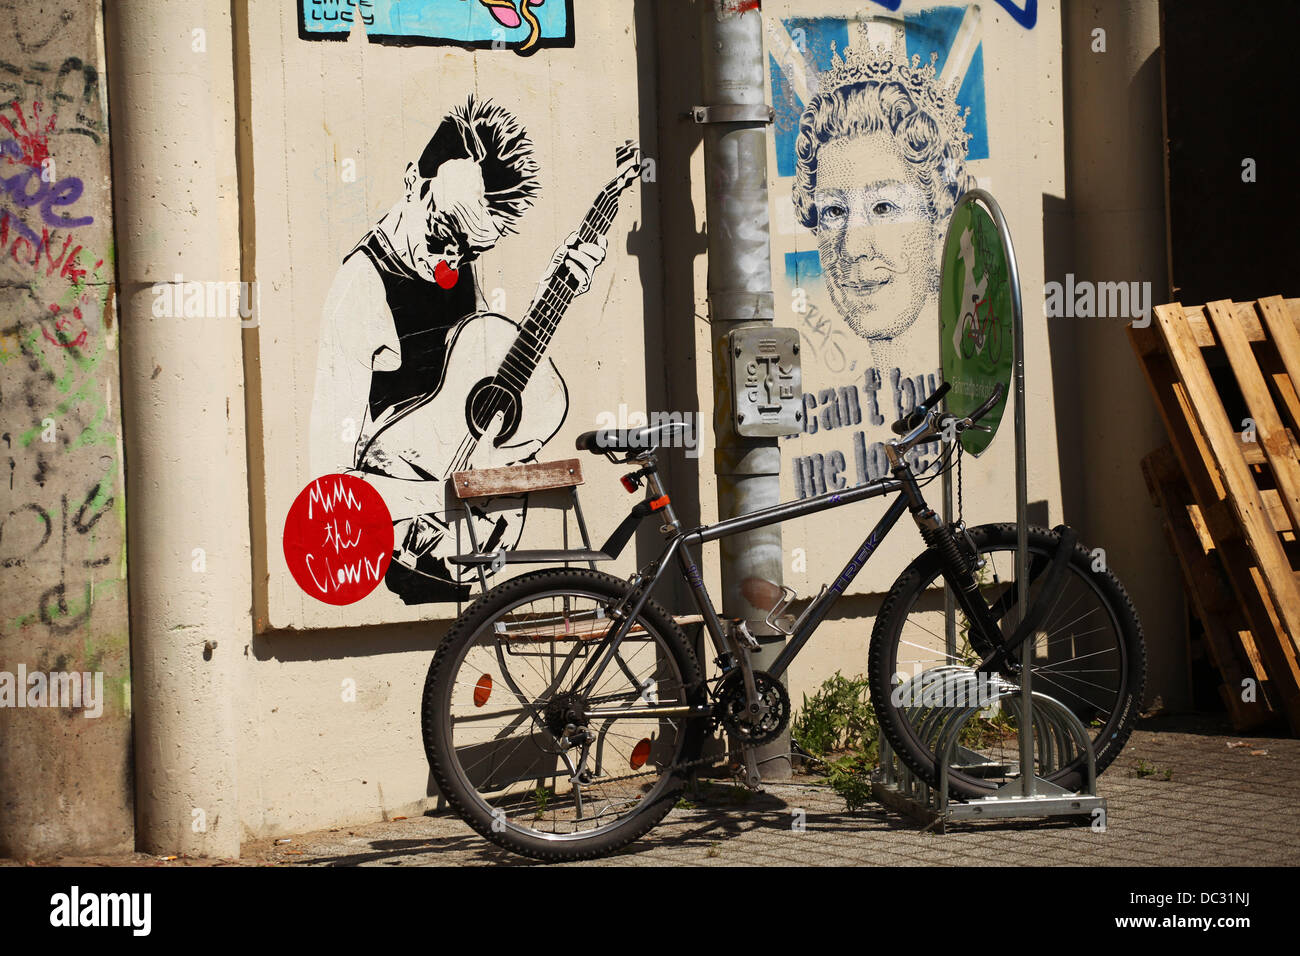 Ein Bild von französische Straßenkünstler MIMI der Clown (l), wird an einer Wand in den Bezirk Mitte in Berlin, 16. Juli 2013 neben einem Bild der Berliner Künstlerin "Emess" geklebt. Foto: Wolfram Steinberg Dpa ** obligatorische CREDIT: ARTWORK von MIMI THE CLOWN und EMESS ** Stockfoto